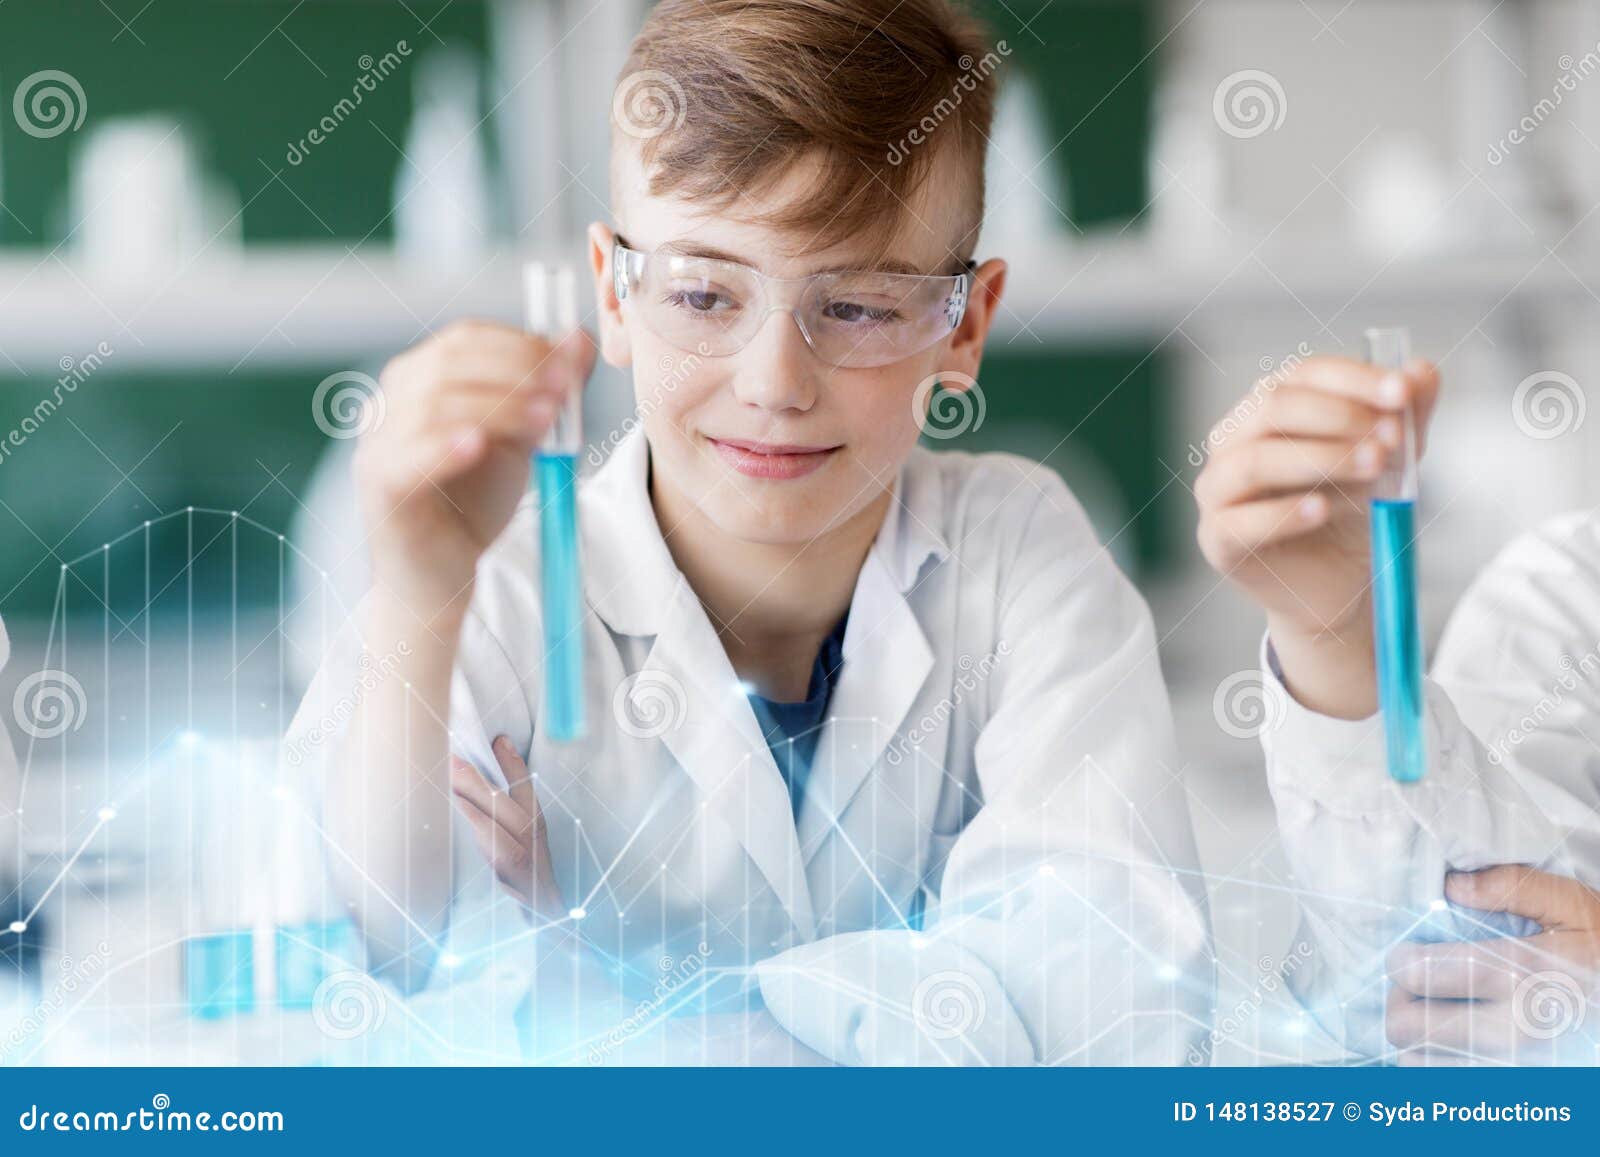 Изучение химии в школе. Мальчик с пробиркой. Школьник с пробирками. Химия для мальчиков. Мальчик с пробиркой картинка.